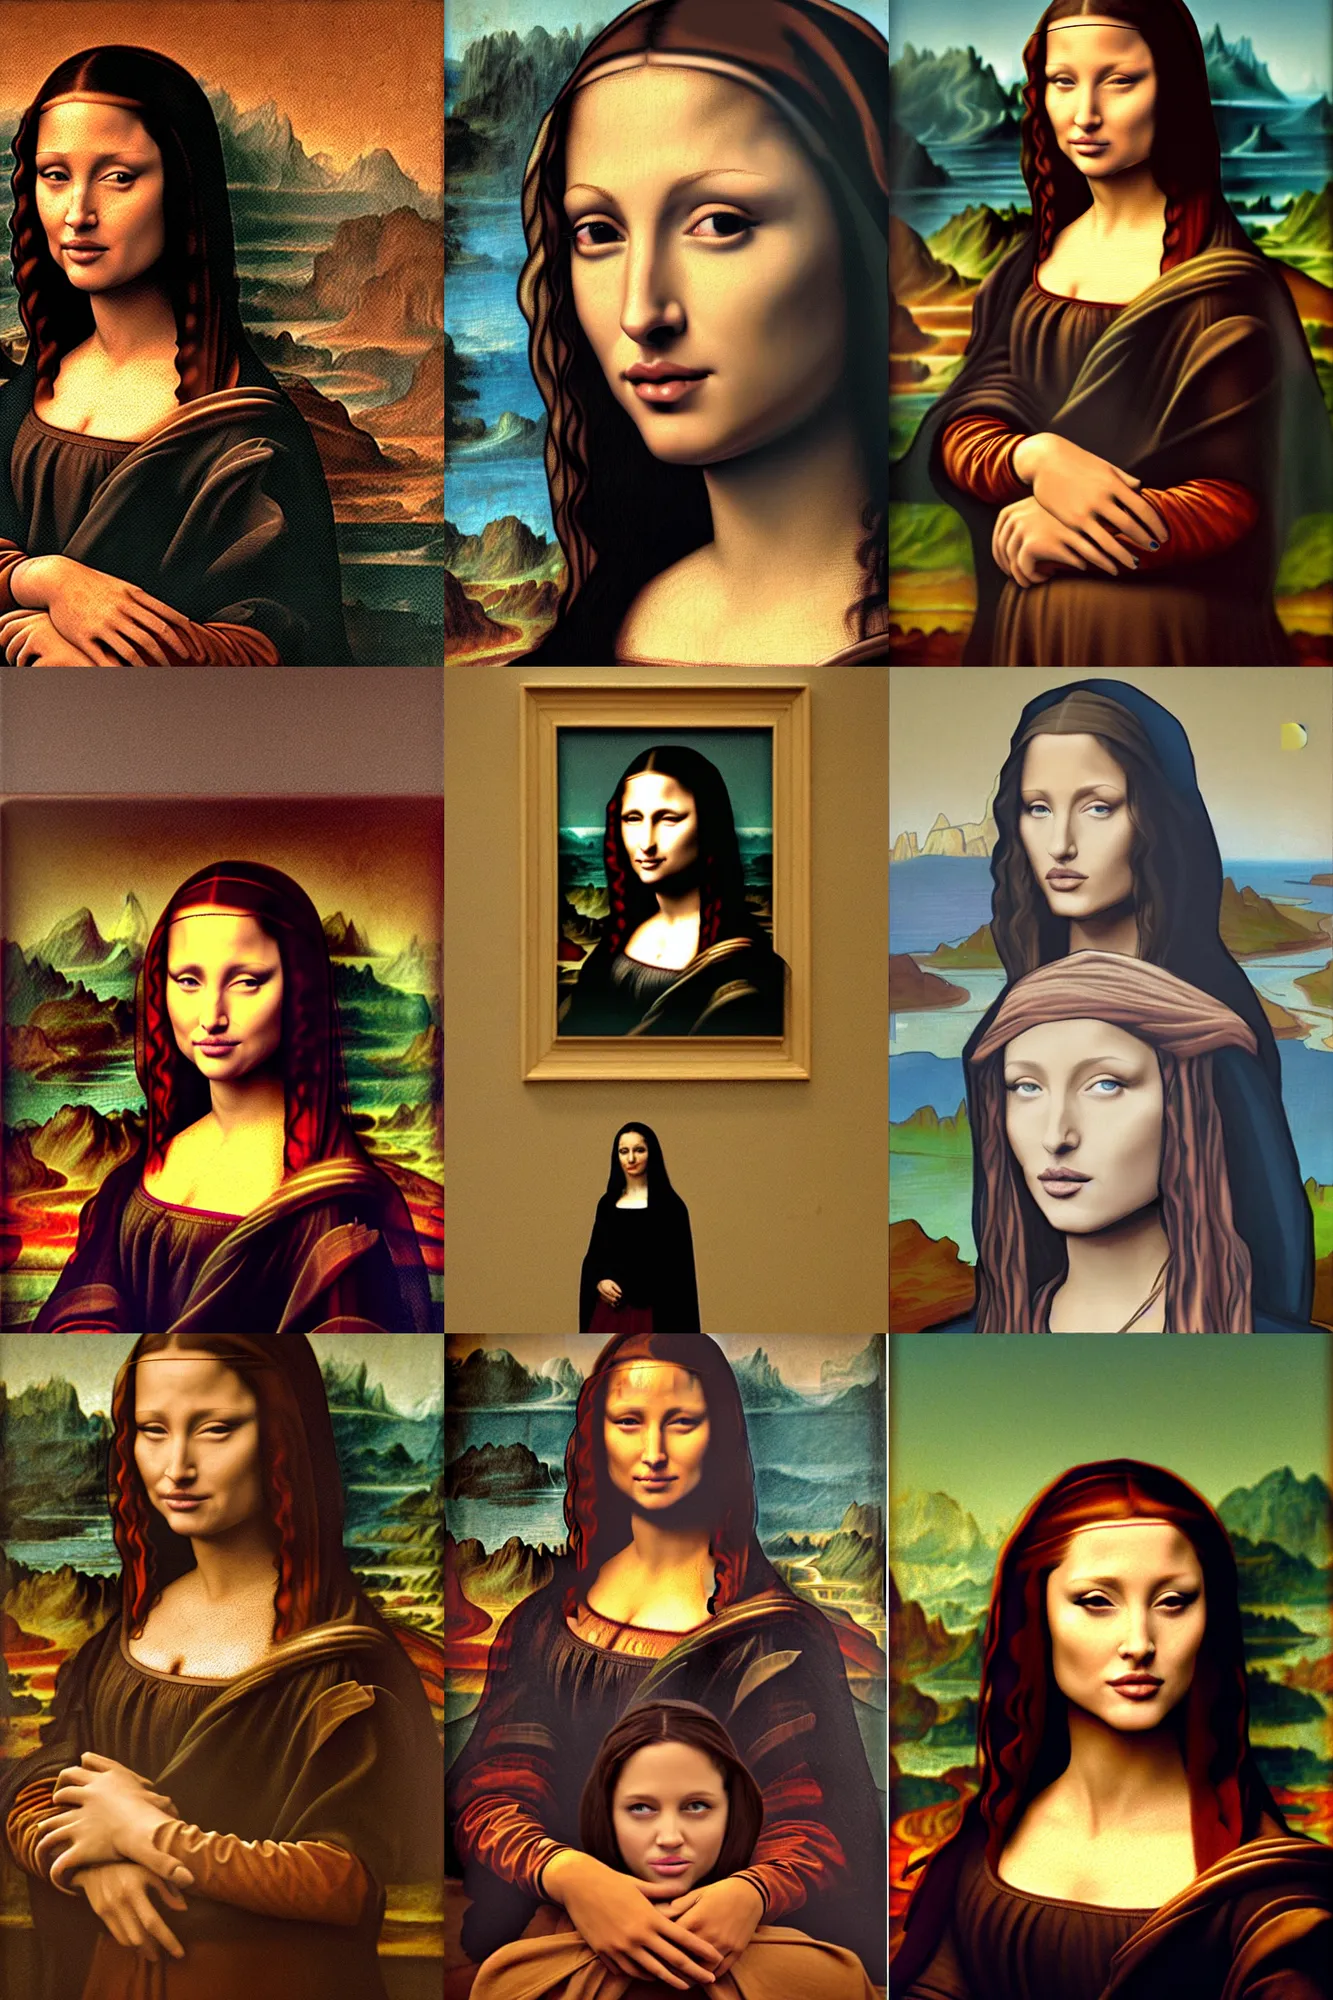 Prompt: Angeline Jolie as Mona Lisa